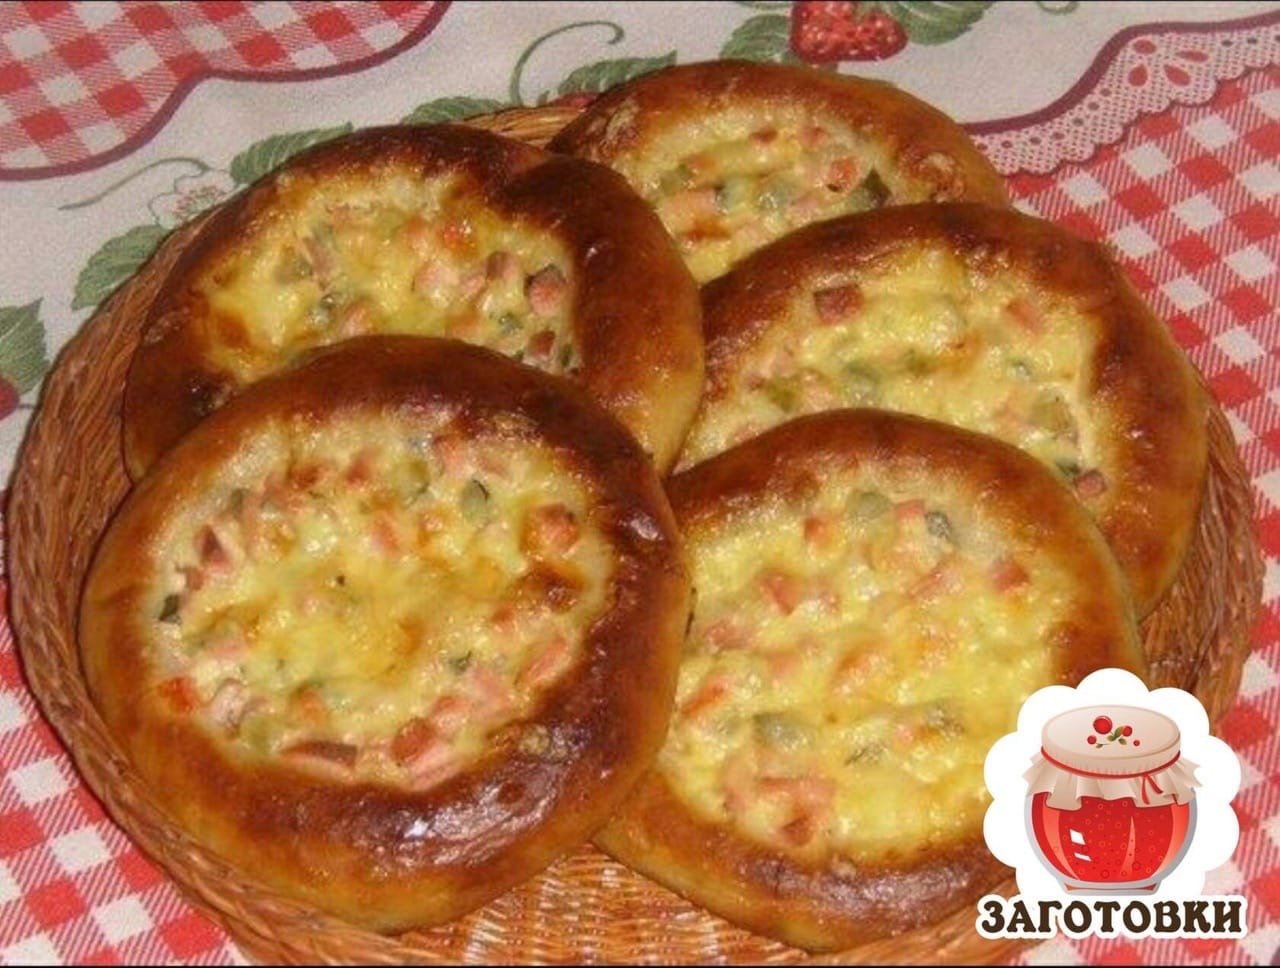 мини пицца в духовке из дрожжевого теста с колбасой и сыром рецепт пошаговый с фото фото 59